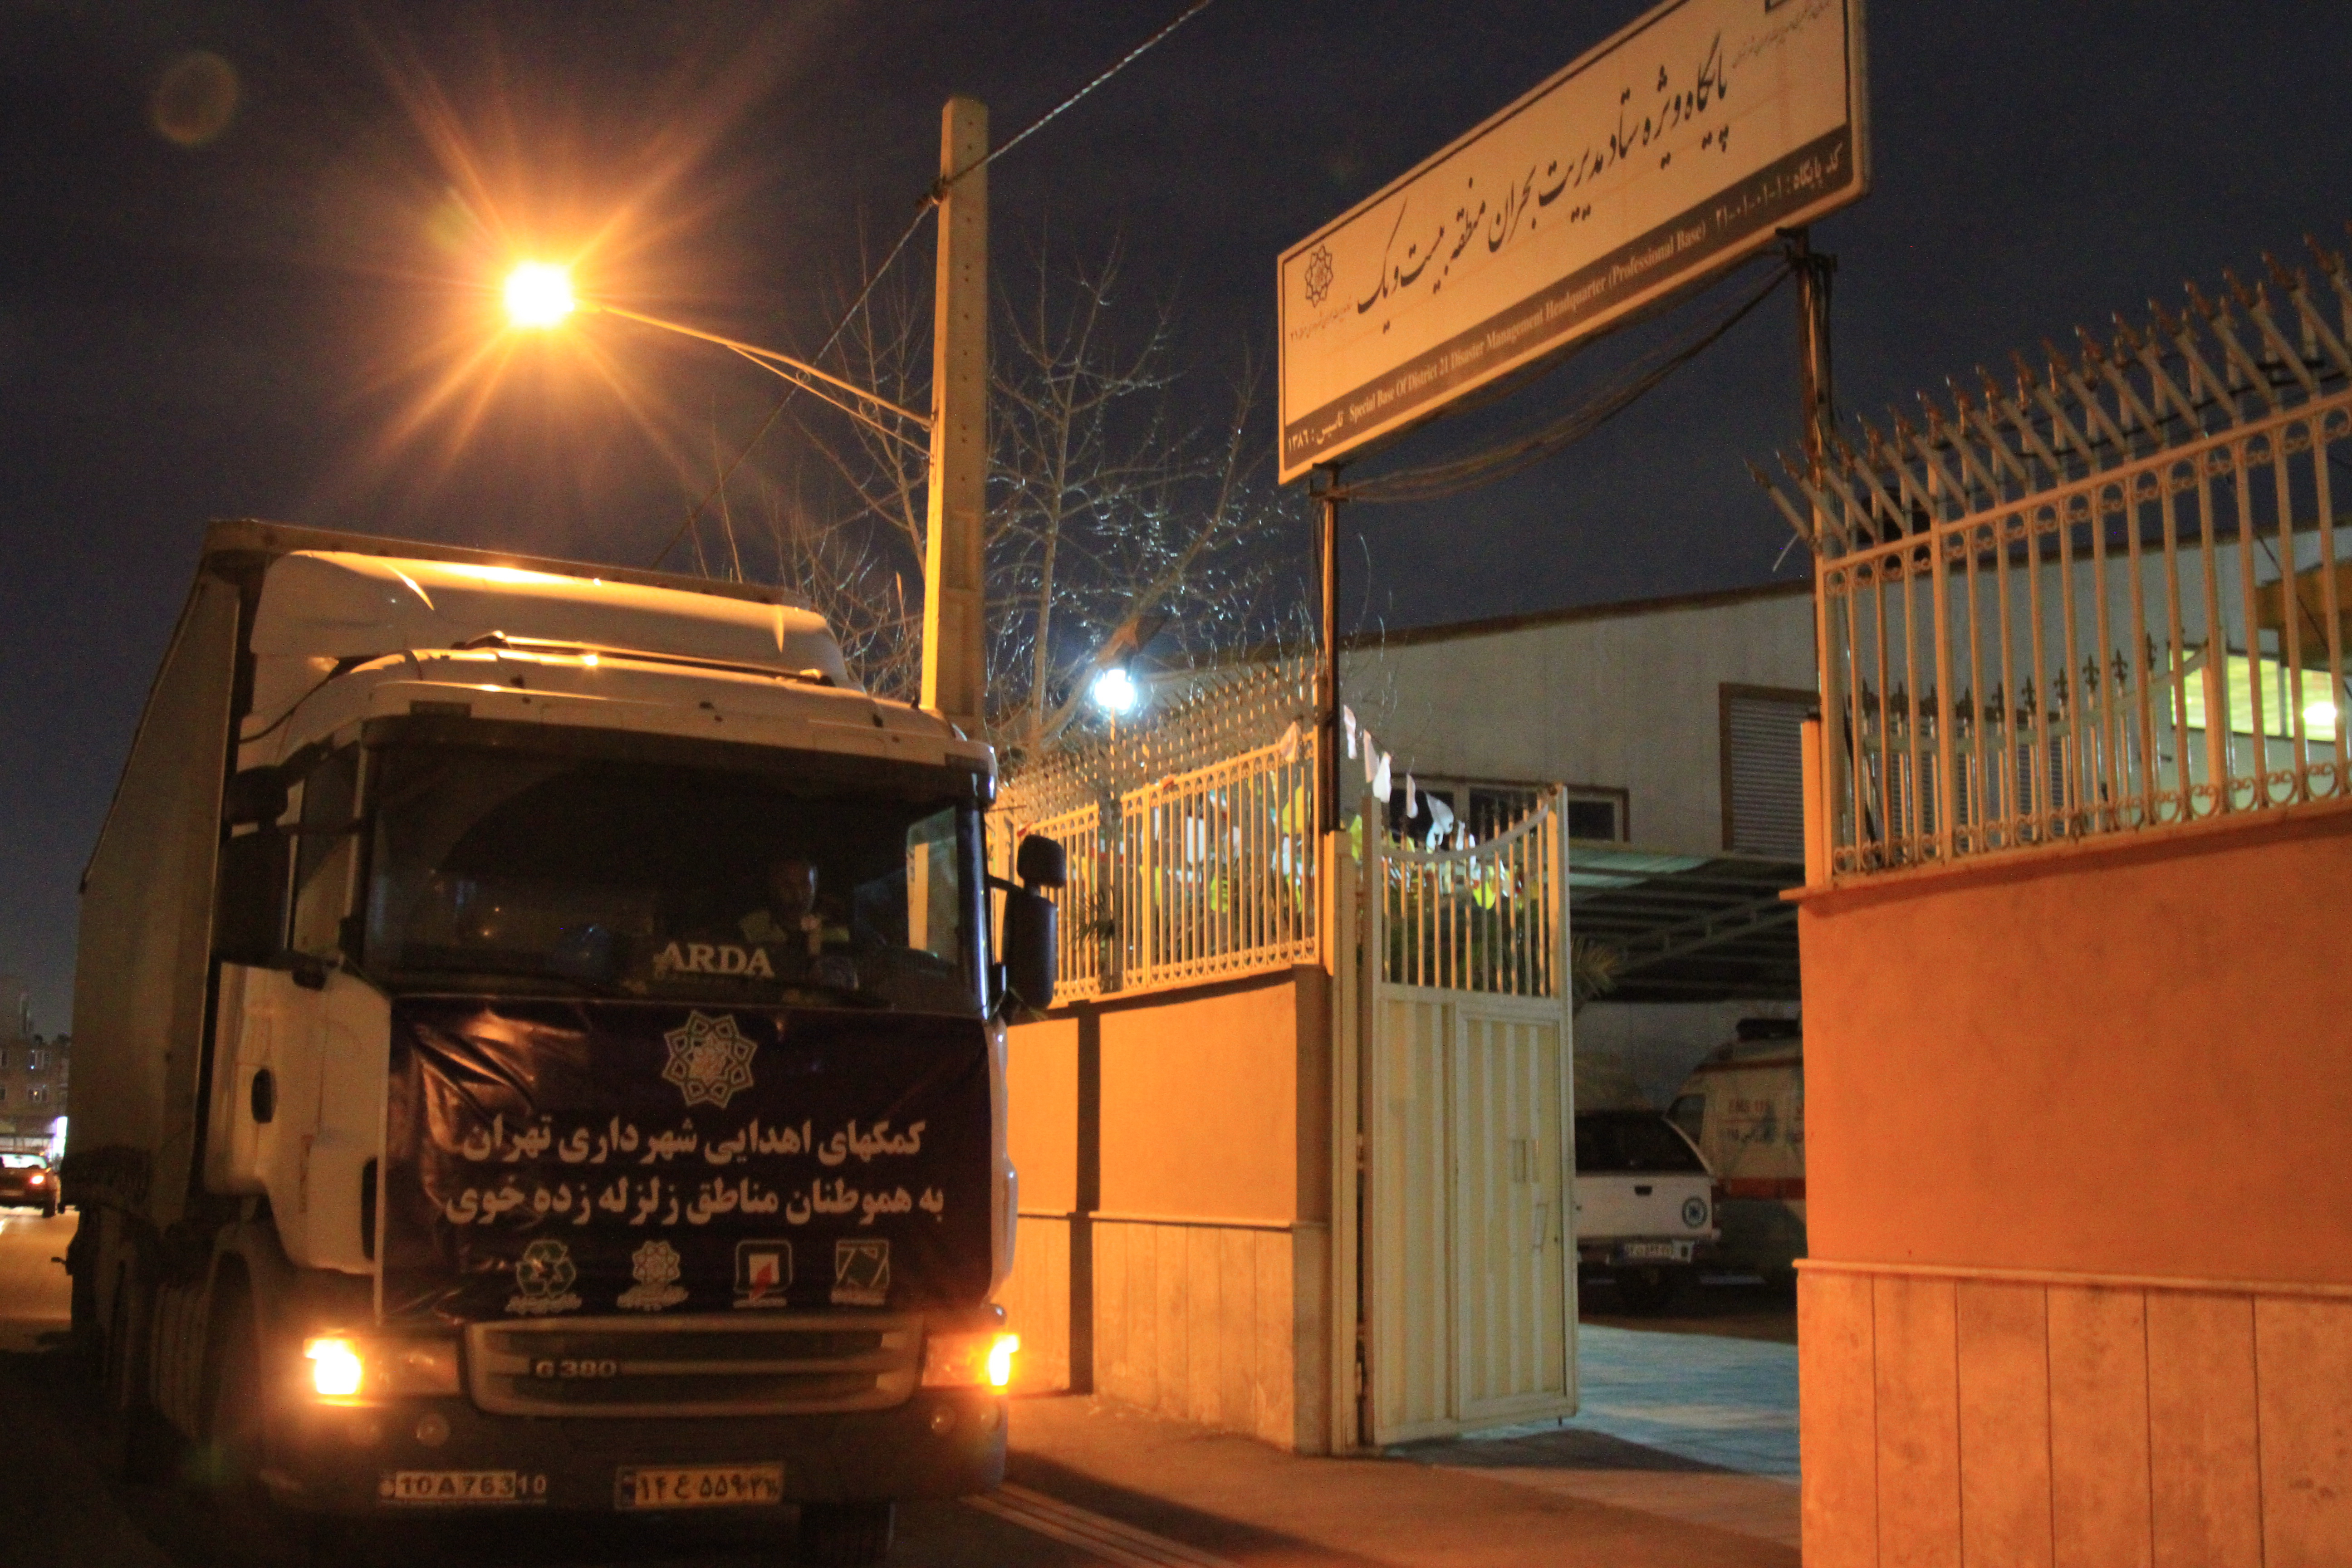 تقدير رئيس شوراي شهر خوی از خدمات رساني شهرداری تهران به زلزله زدگان